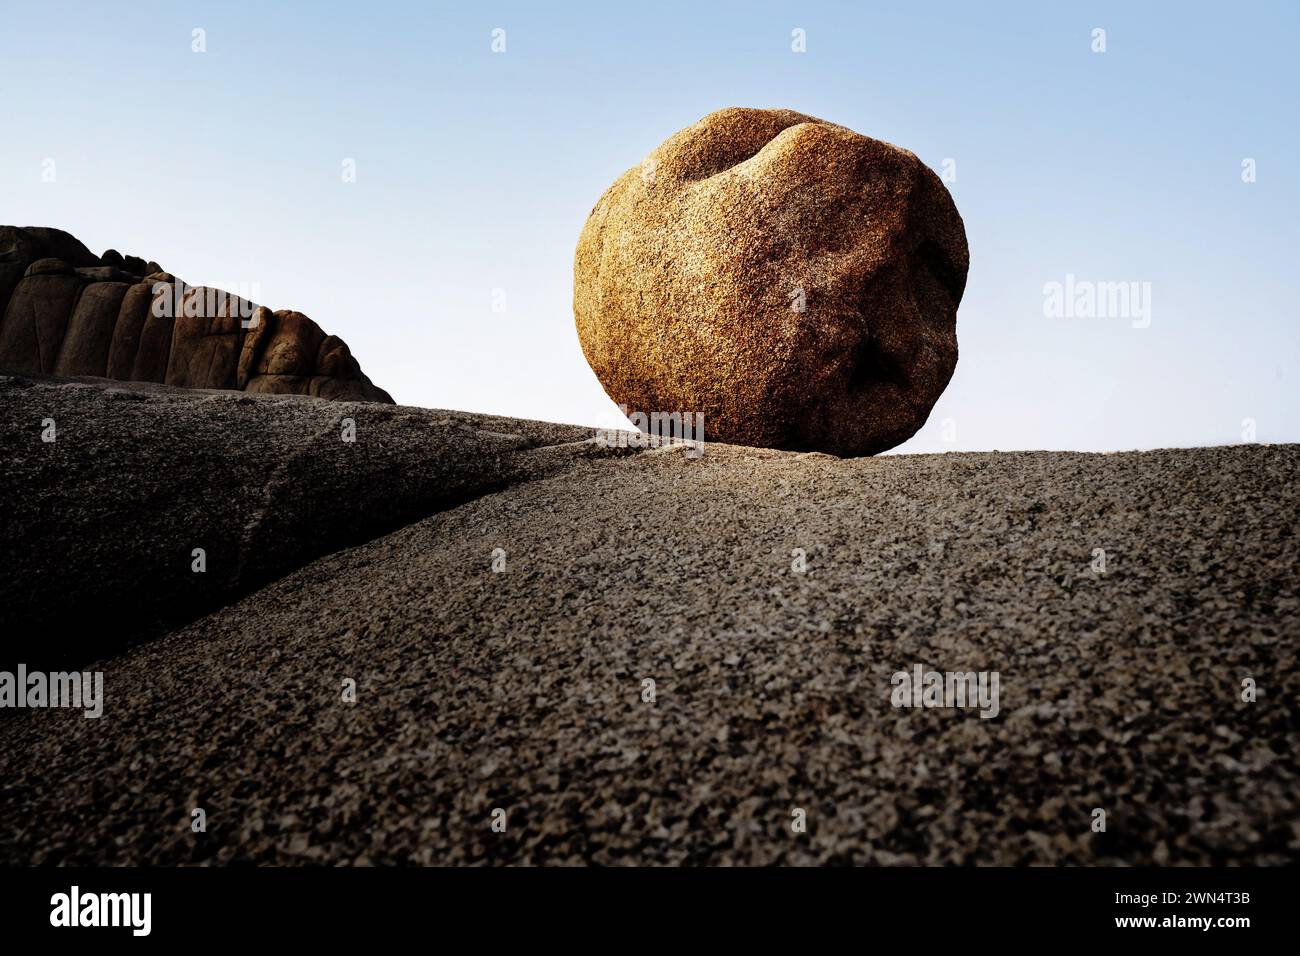 Une boule de rocher presque ronde est illuminée par le soleil doré sur un plateau contre un ciel bleu. Banque D'Images